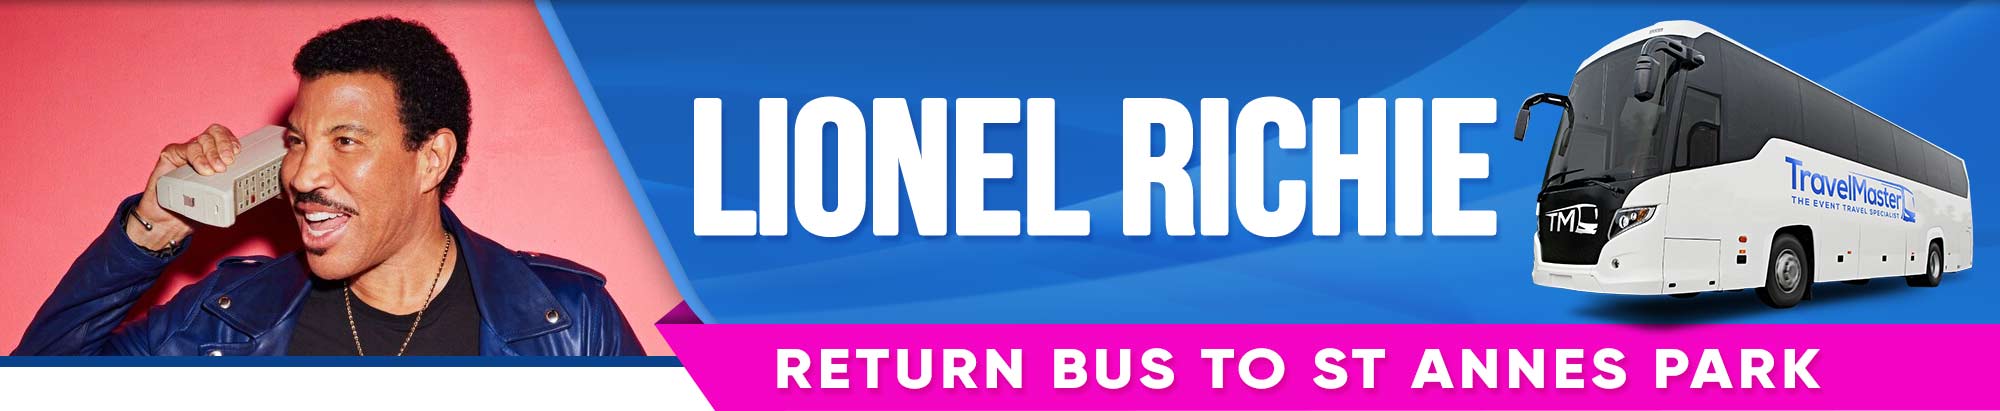 Bus to Lionel Richie, St Annes Park Dublin - Nationwide Return - 6 June 2020